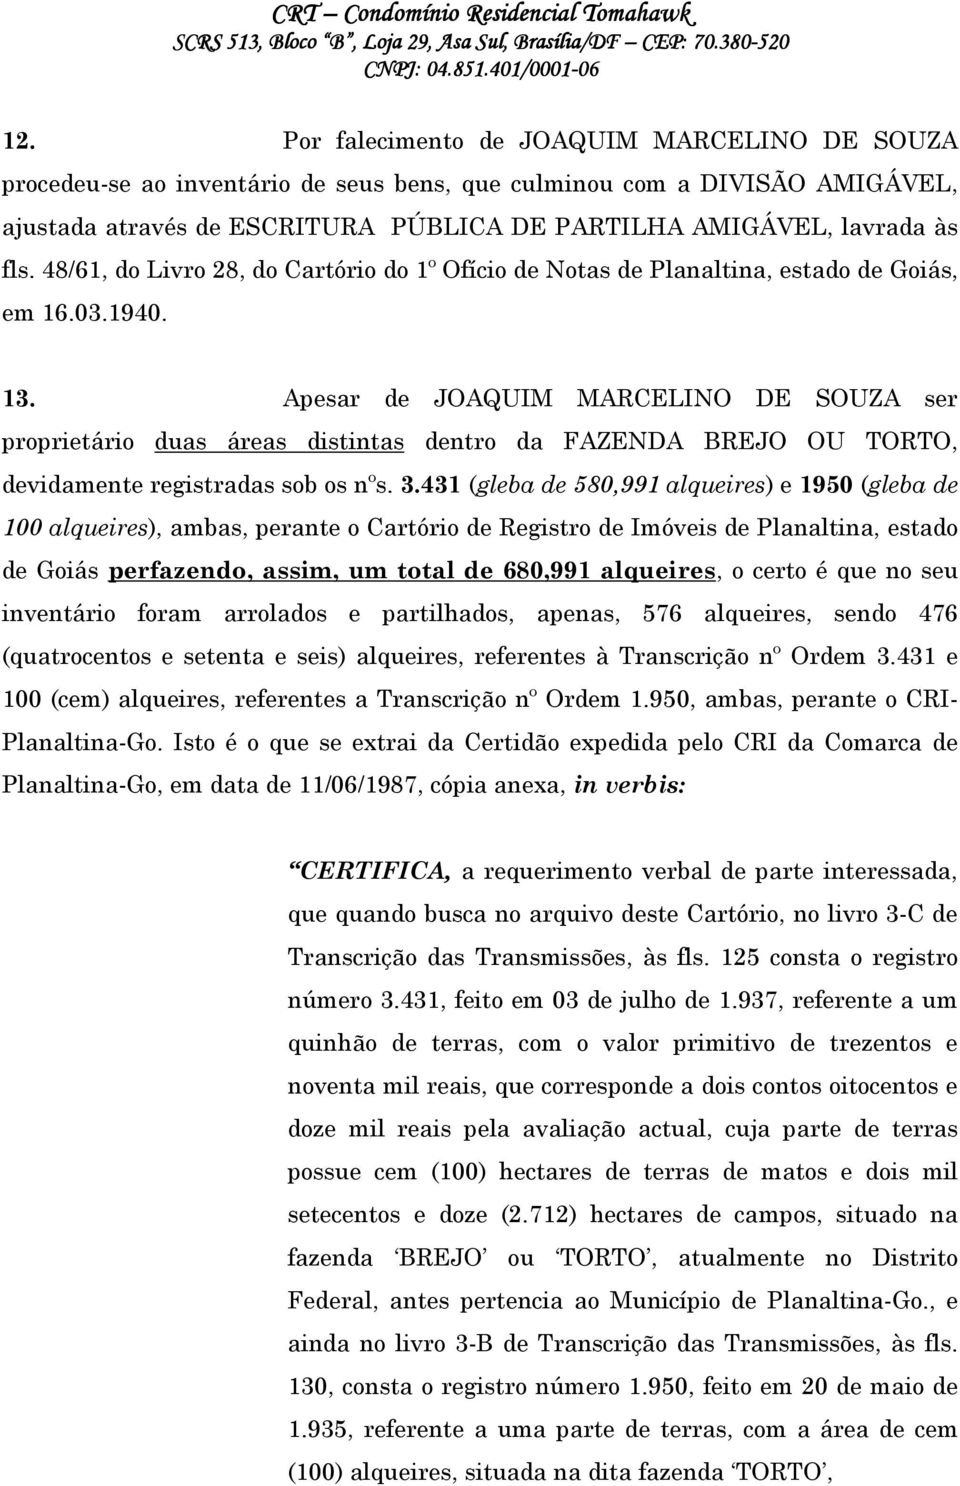 Apesar de JOAQUIM MARCELINO DE SOUZA ser proprietário duas áreas distintas dentro da FAZENDA BREJO OU TORTO, devidamente registradas sob os nºs. 3.